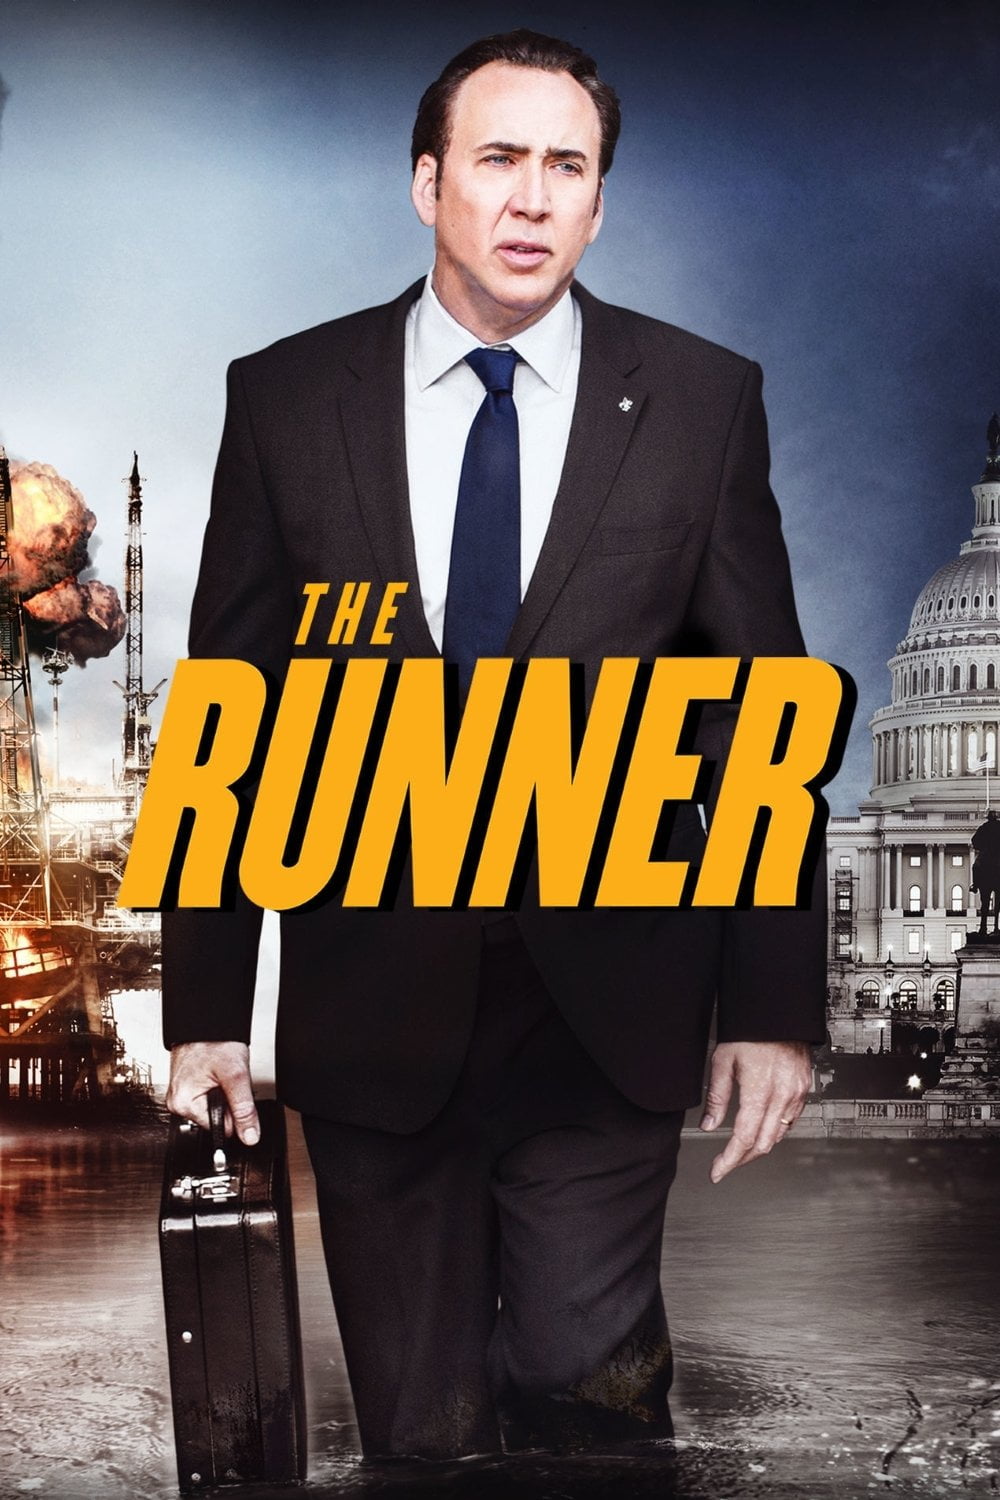 Poster for the filmen "The Runner"